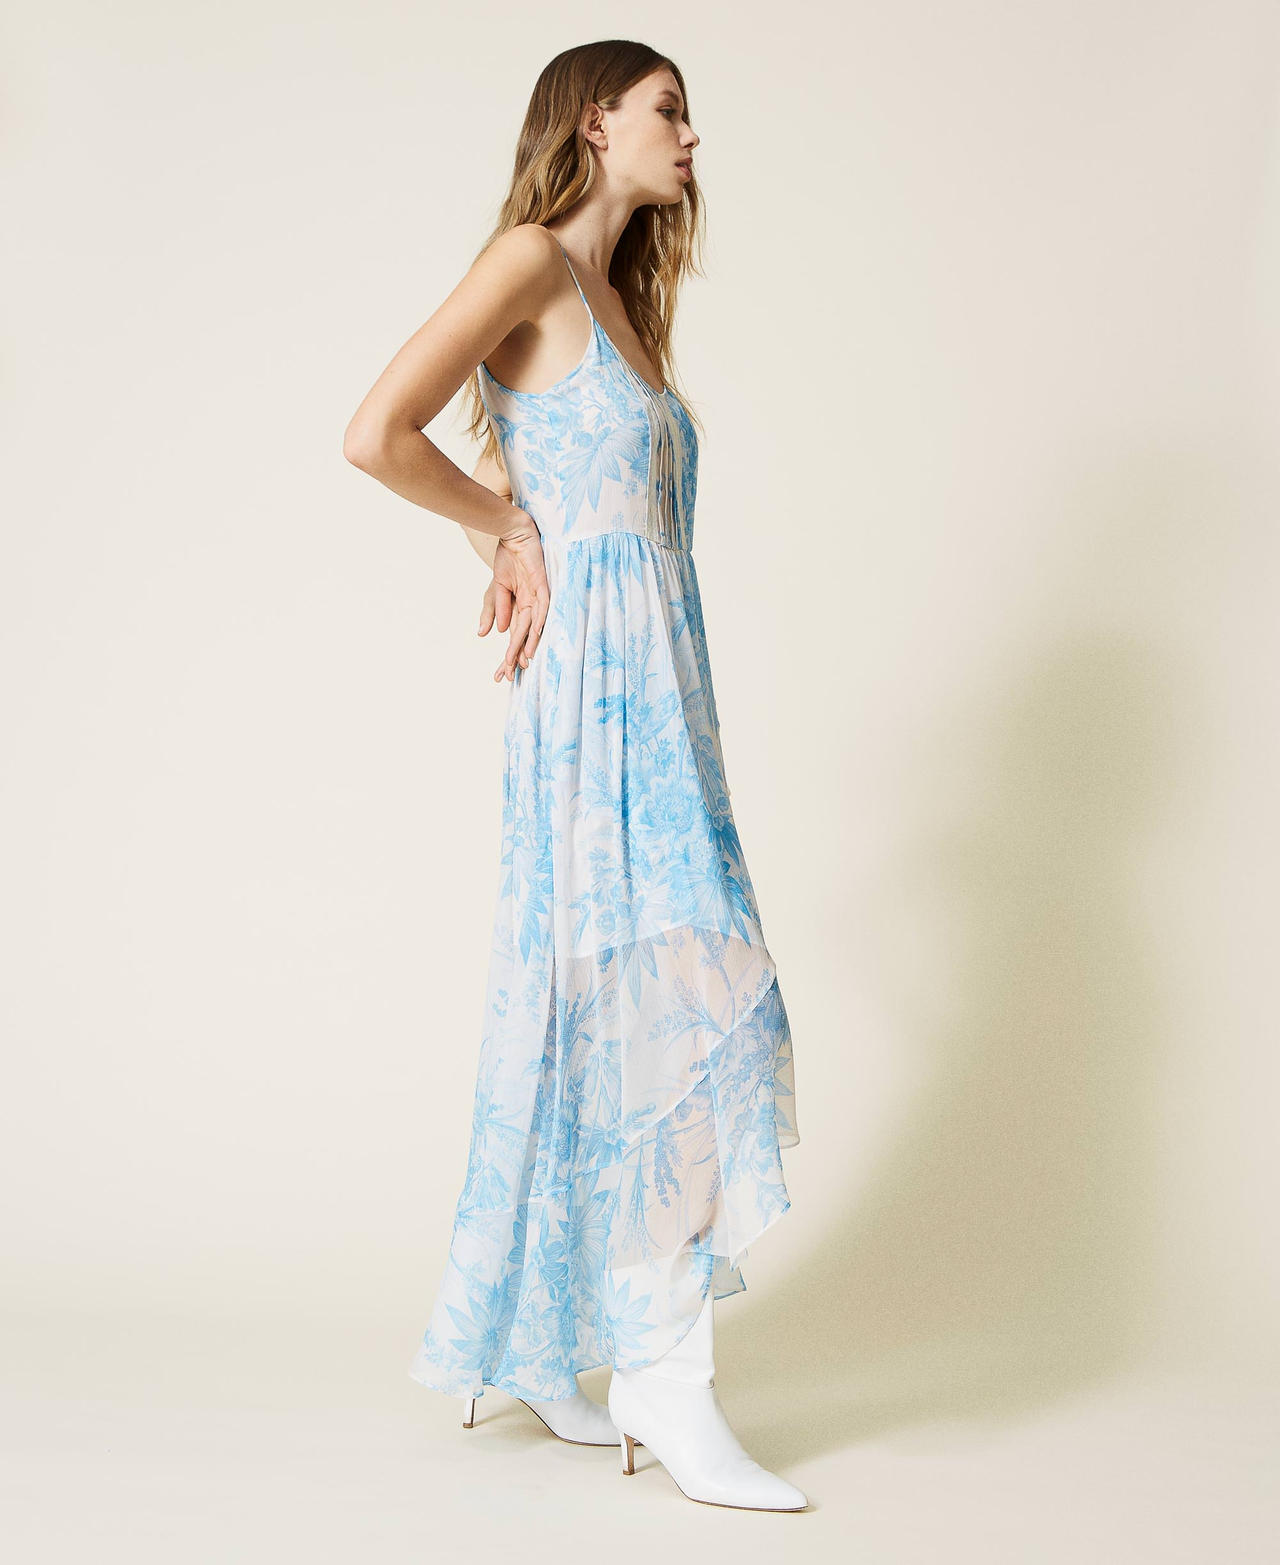 Robe longue avec imprimé floral toile de Jouy Imprimé Fleur Sanderson Blanc « Neige »/Bleu Femme 221TP2711-03